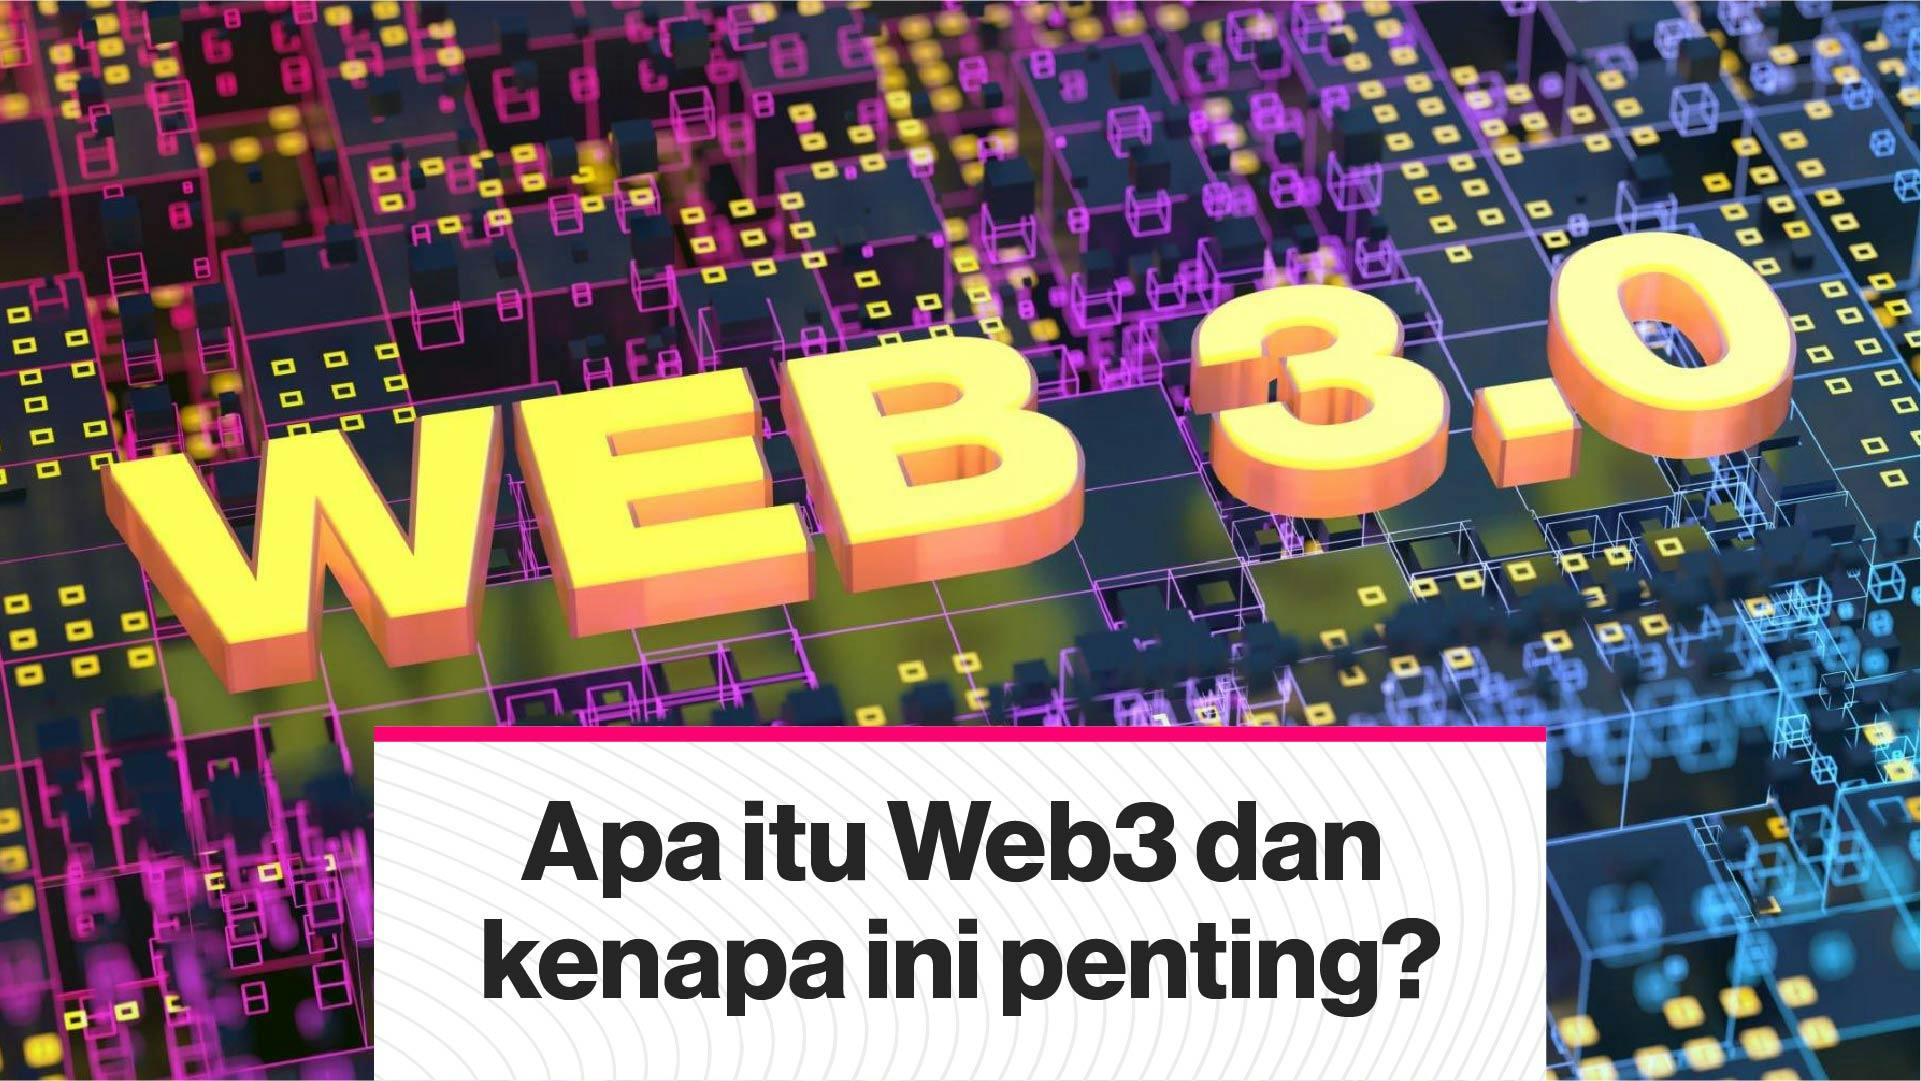 Apa itu Web3 dan kenapa ini penting? (Coindesk Indonesia)